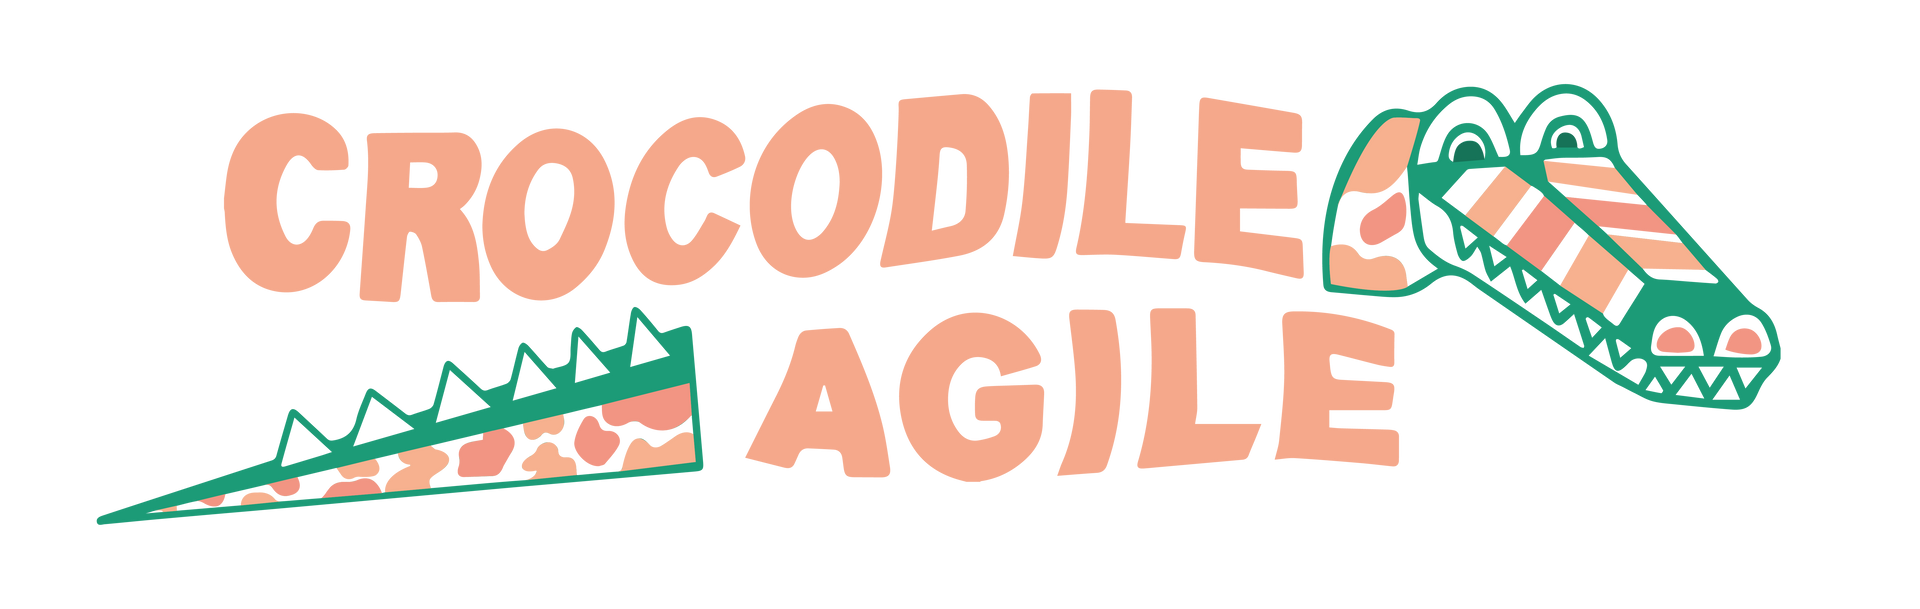 CROCODILE AGILE logo